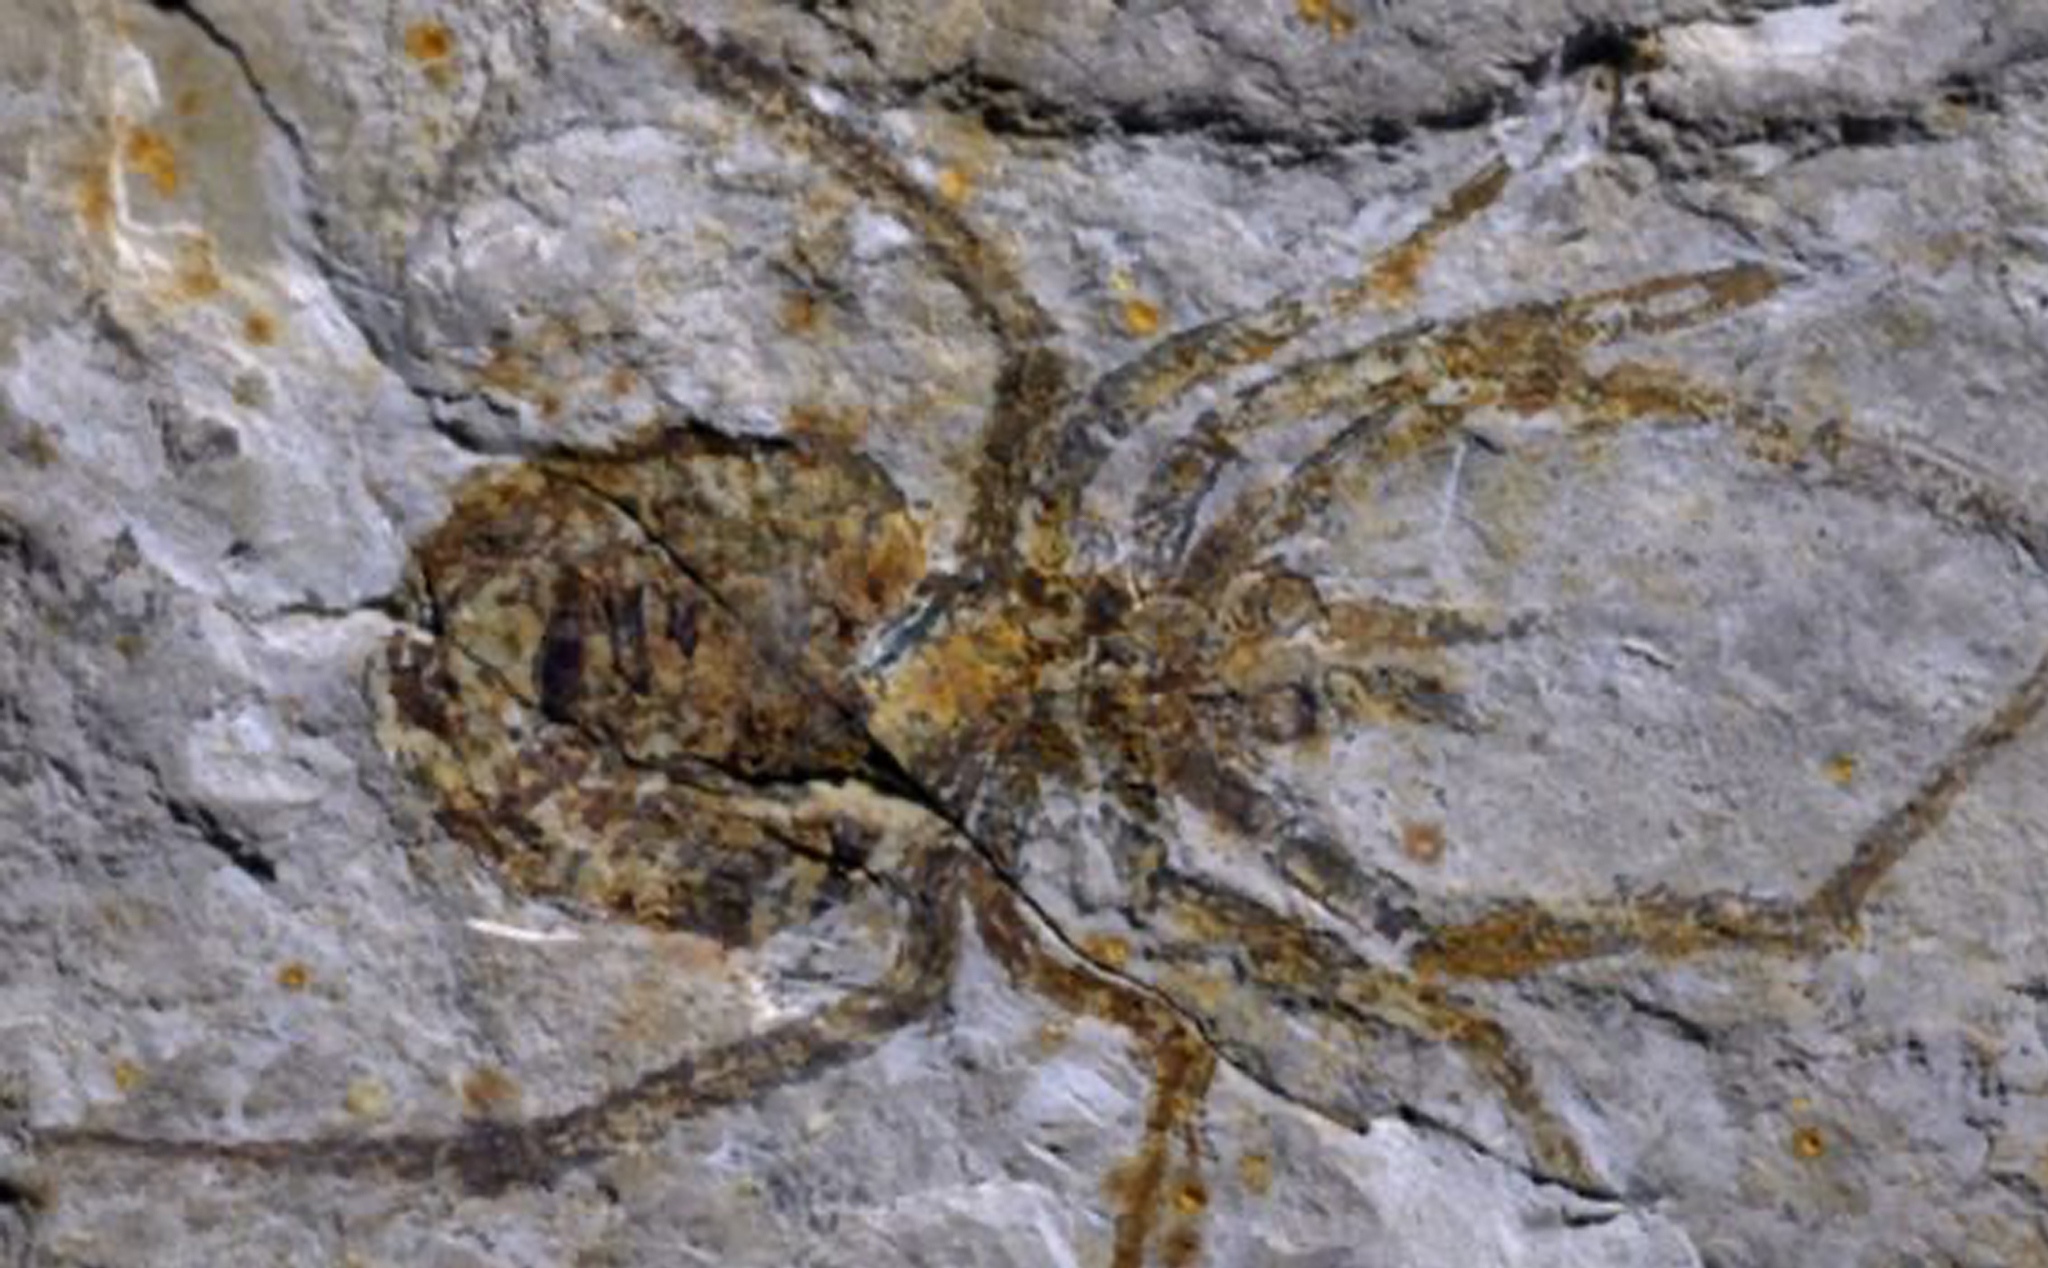 Đây là hoá thạch nhện cổ đại được làm giả để kiếm tiền, thực chất đó là tôm hùm đất